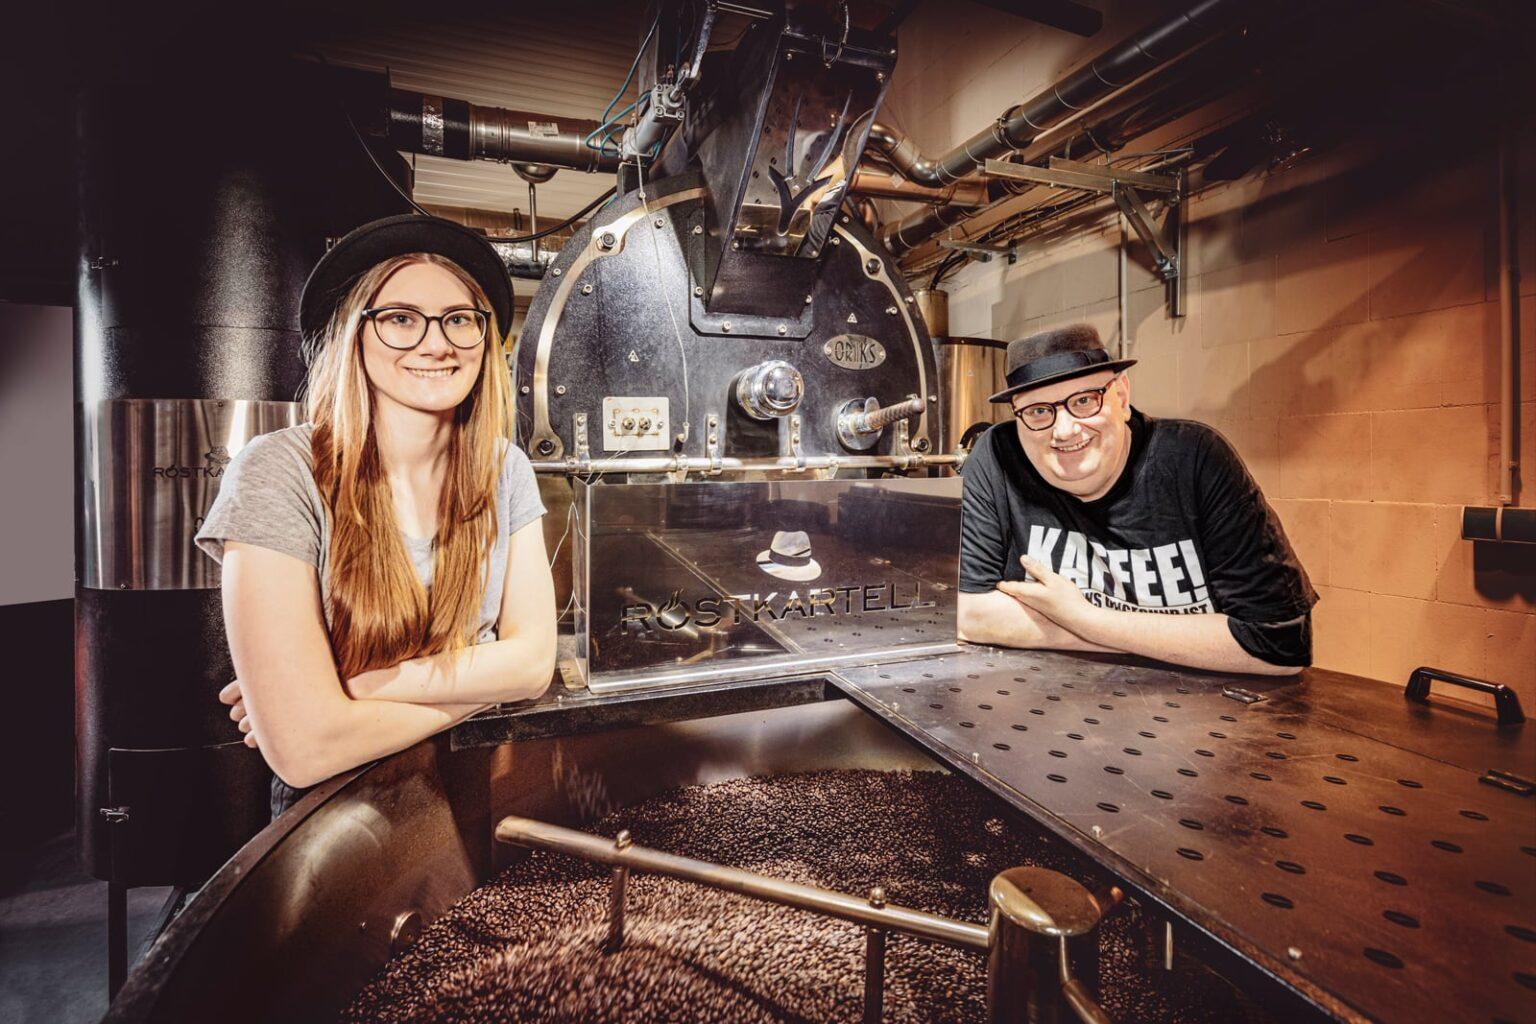 Kristin und Dirk sind das Röstkartell: Eine Kaffeerösterei in Osnabrück